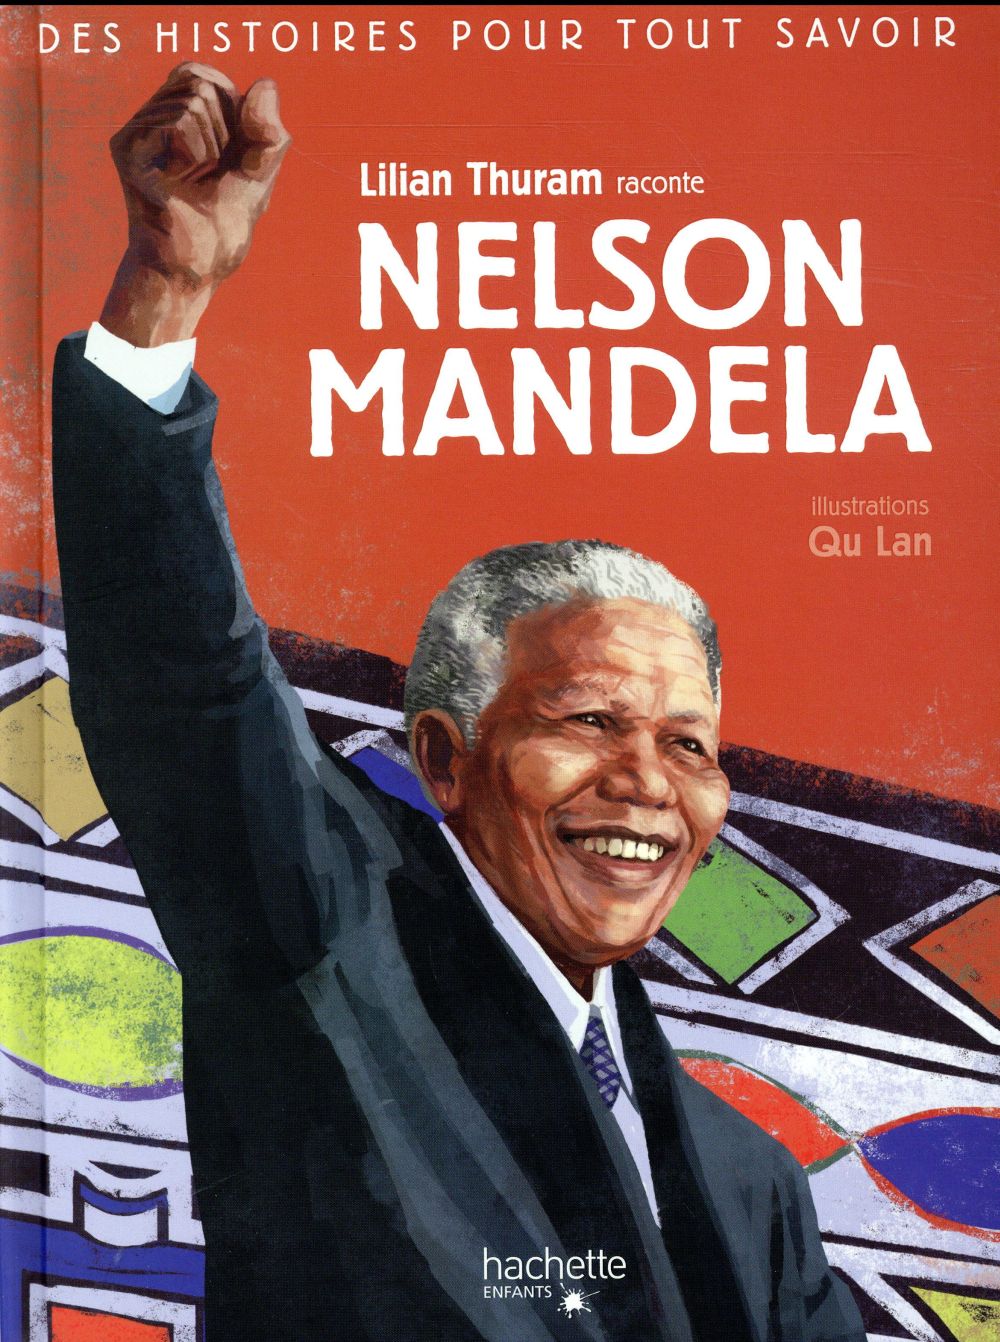 DES HISTOIRES POUR TOUT SAVOIR - NELSON MANDELA